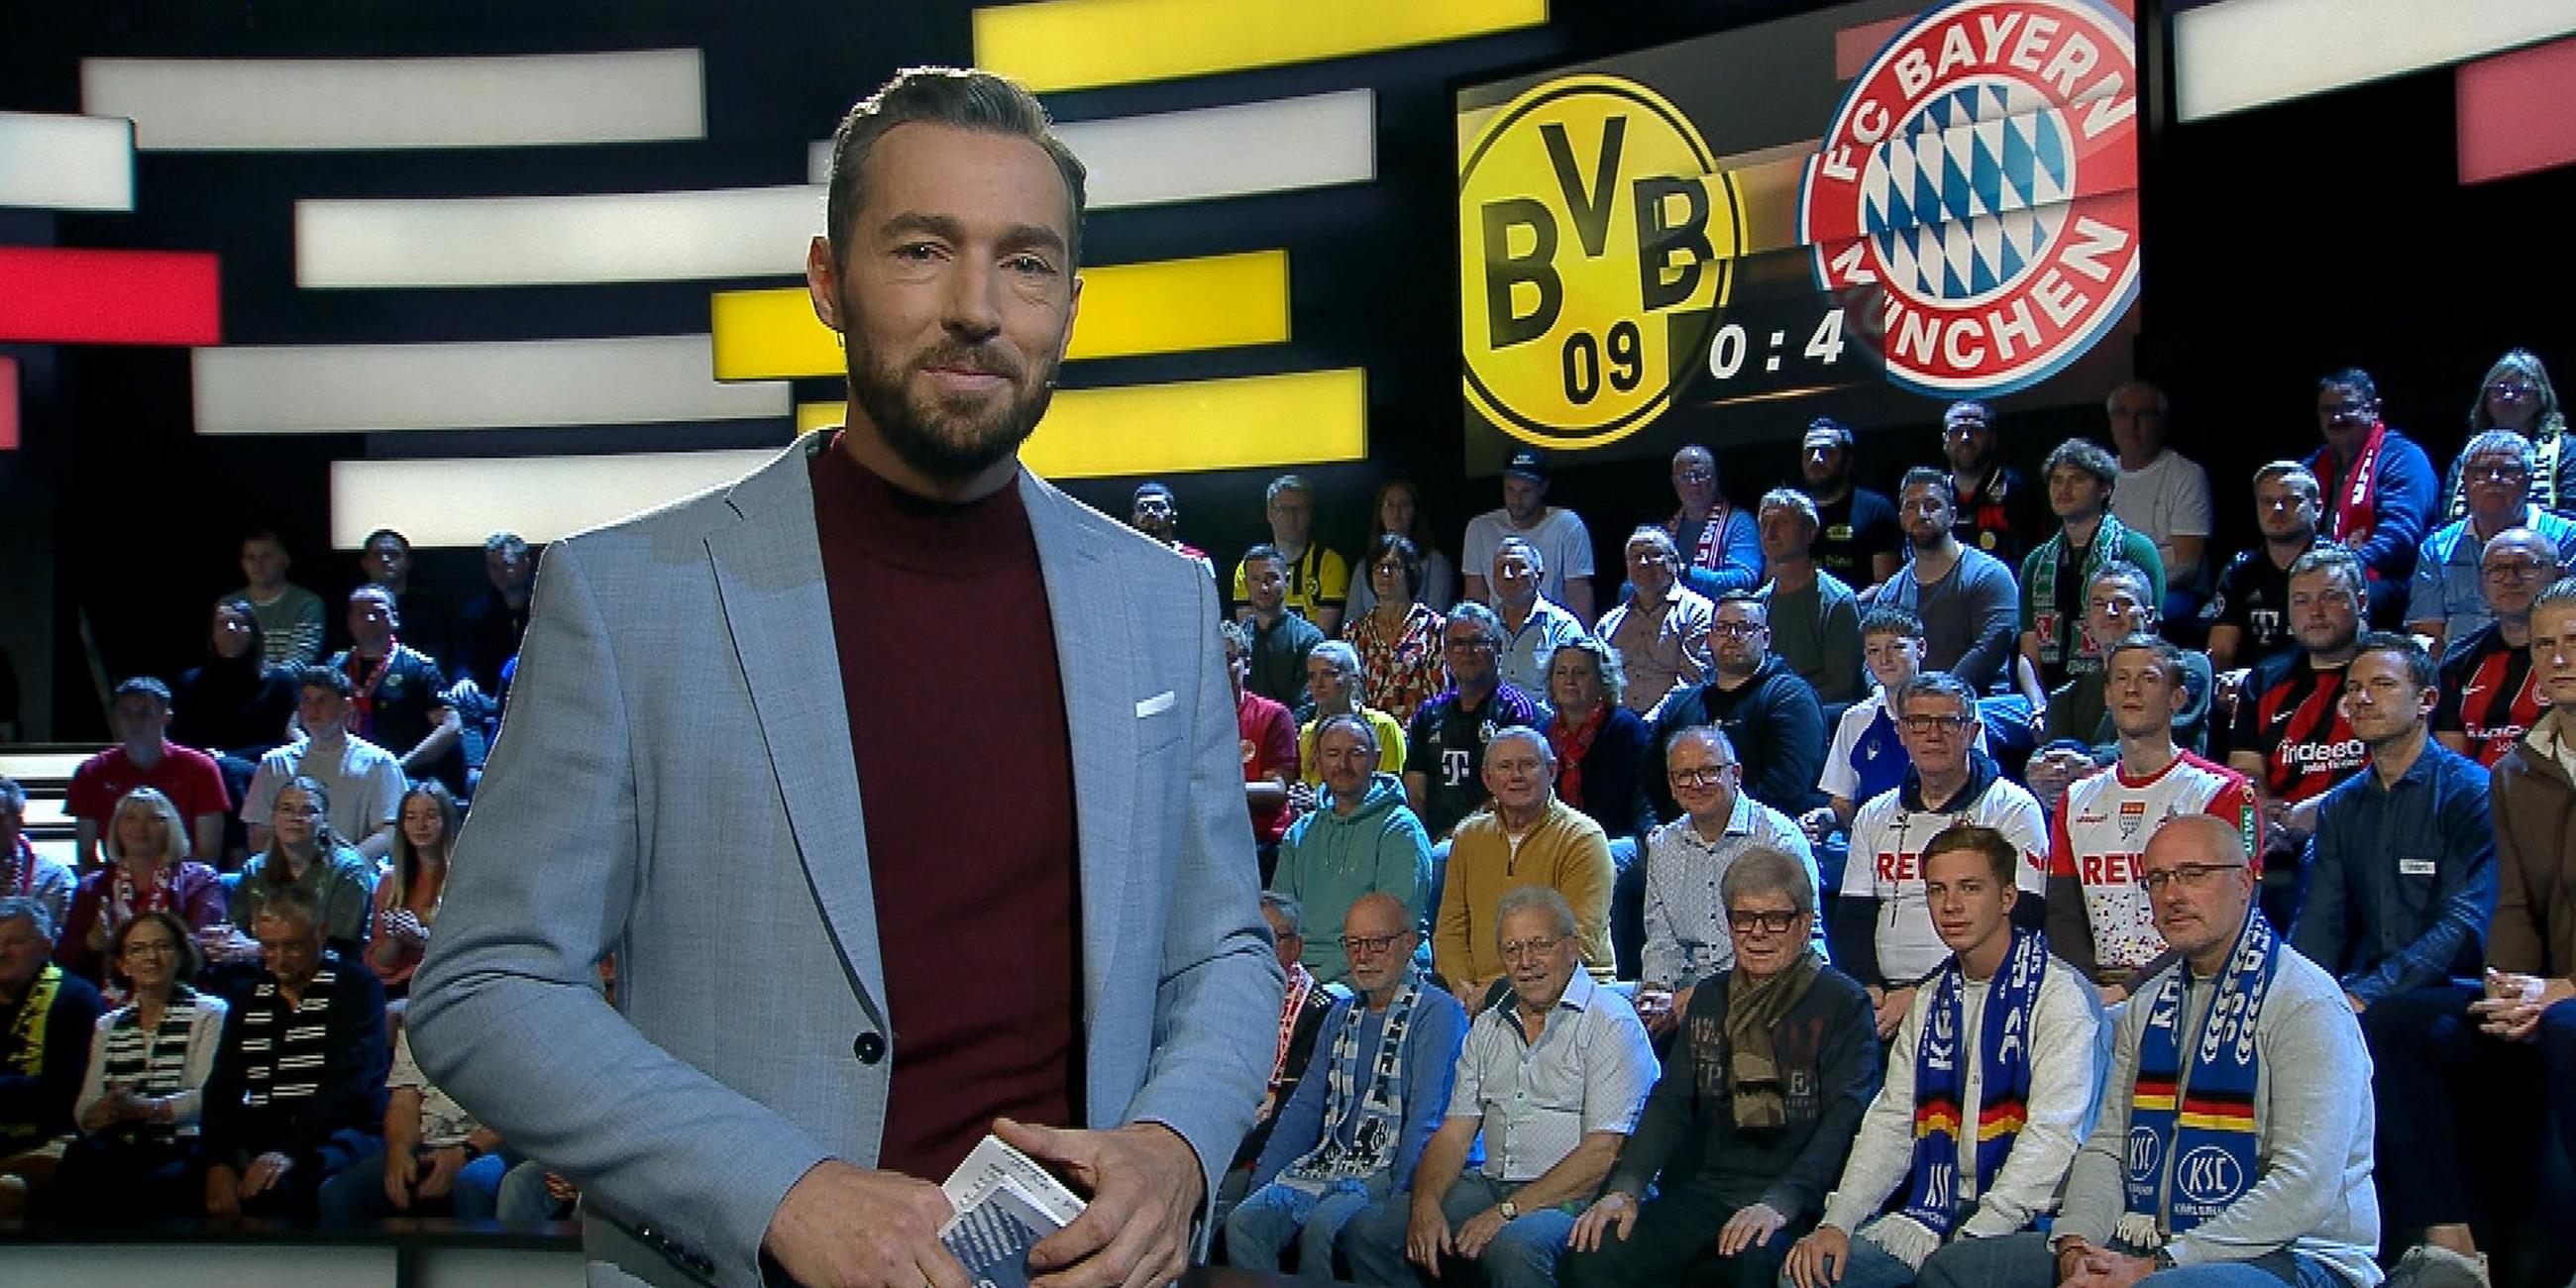 Sven Voss berichtet über das Abendspiel Dortmund gegen Bayern München im aktuellen sportstudio am 04.11.23.